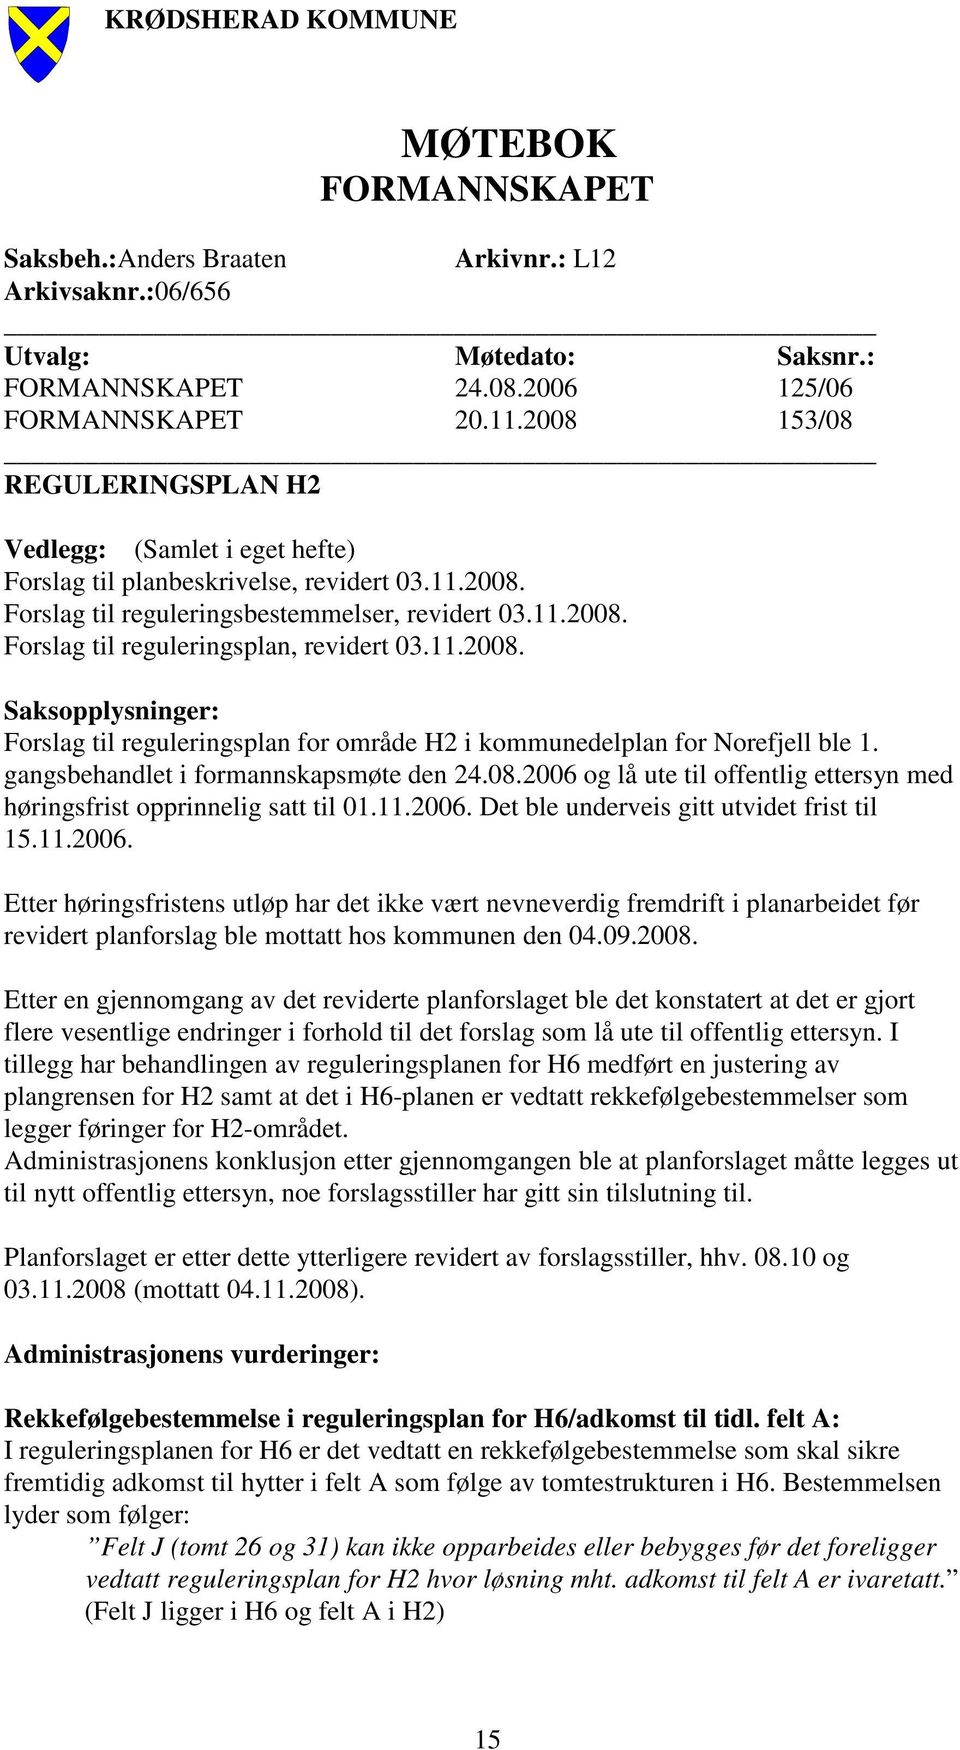 11.2008. Saksopplysninger: Forslag til reguleringsplan for område H2 i kommunedelplan for Norefjell ble 1. gangsbehandlet i formannskapsmøte den 24.08.2006 og lå ute til offentlig ettersyn med høringsfrist opprinnelig satt til 01.